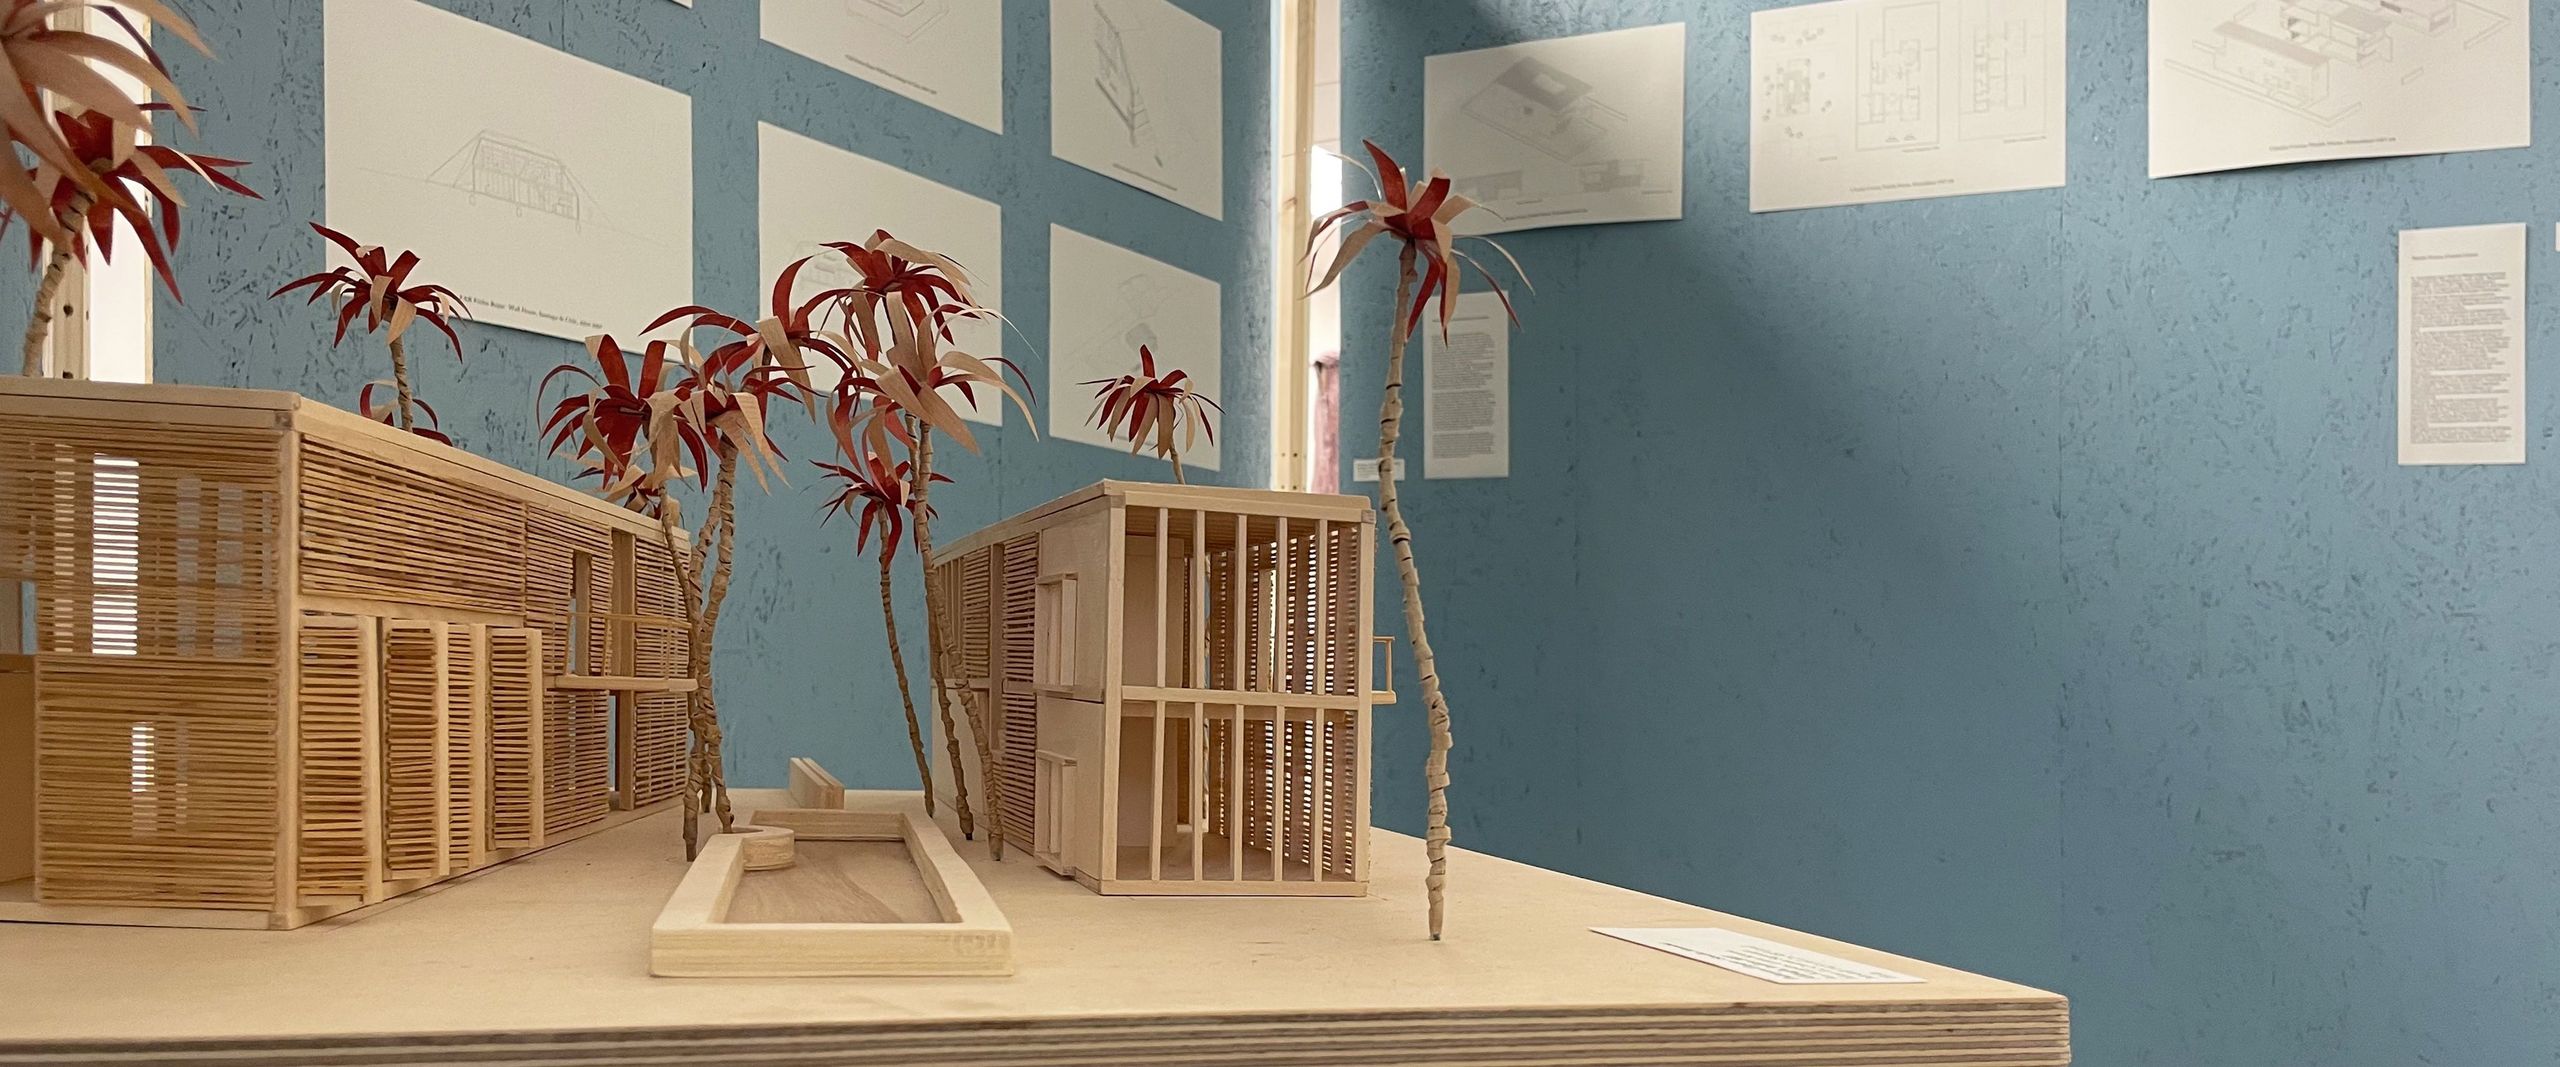 Architekturmodell aus Holz mit Häusern und Palmen